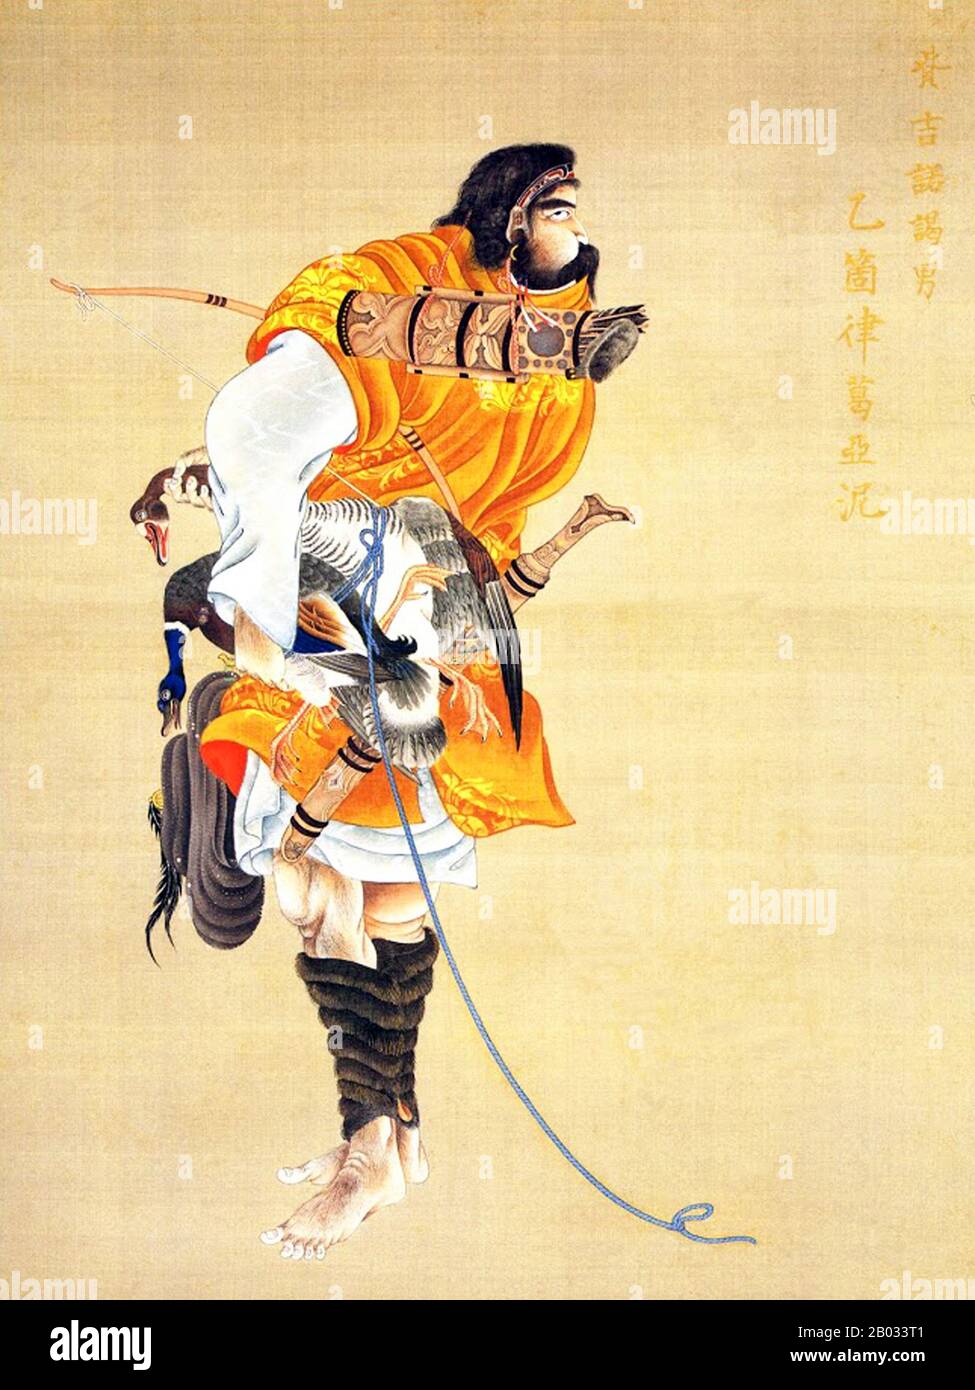 Kakizaki Hakyo (25. Juni 1764 - 26. Juli 1826) war ein Samurai-Künstler aus dem Matsumae-Clan. Sein erster künstlerischer Erfolg war eine Gruppe von 12 Porträts namens "The Ishu Retsuzo". Die Porträts waren von 12 Ainu-Chefs aus dem nördlichen Bereich von Ezo, heute Hokkaido. Stockfoto